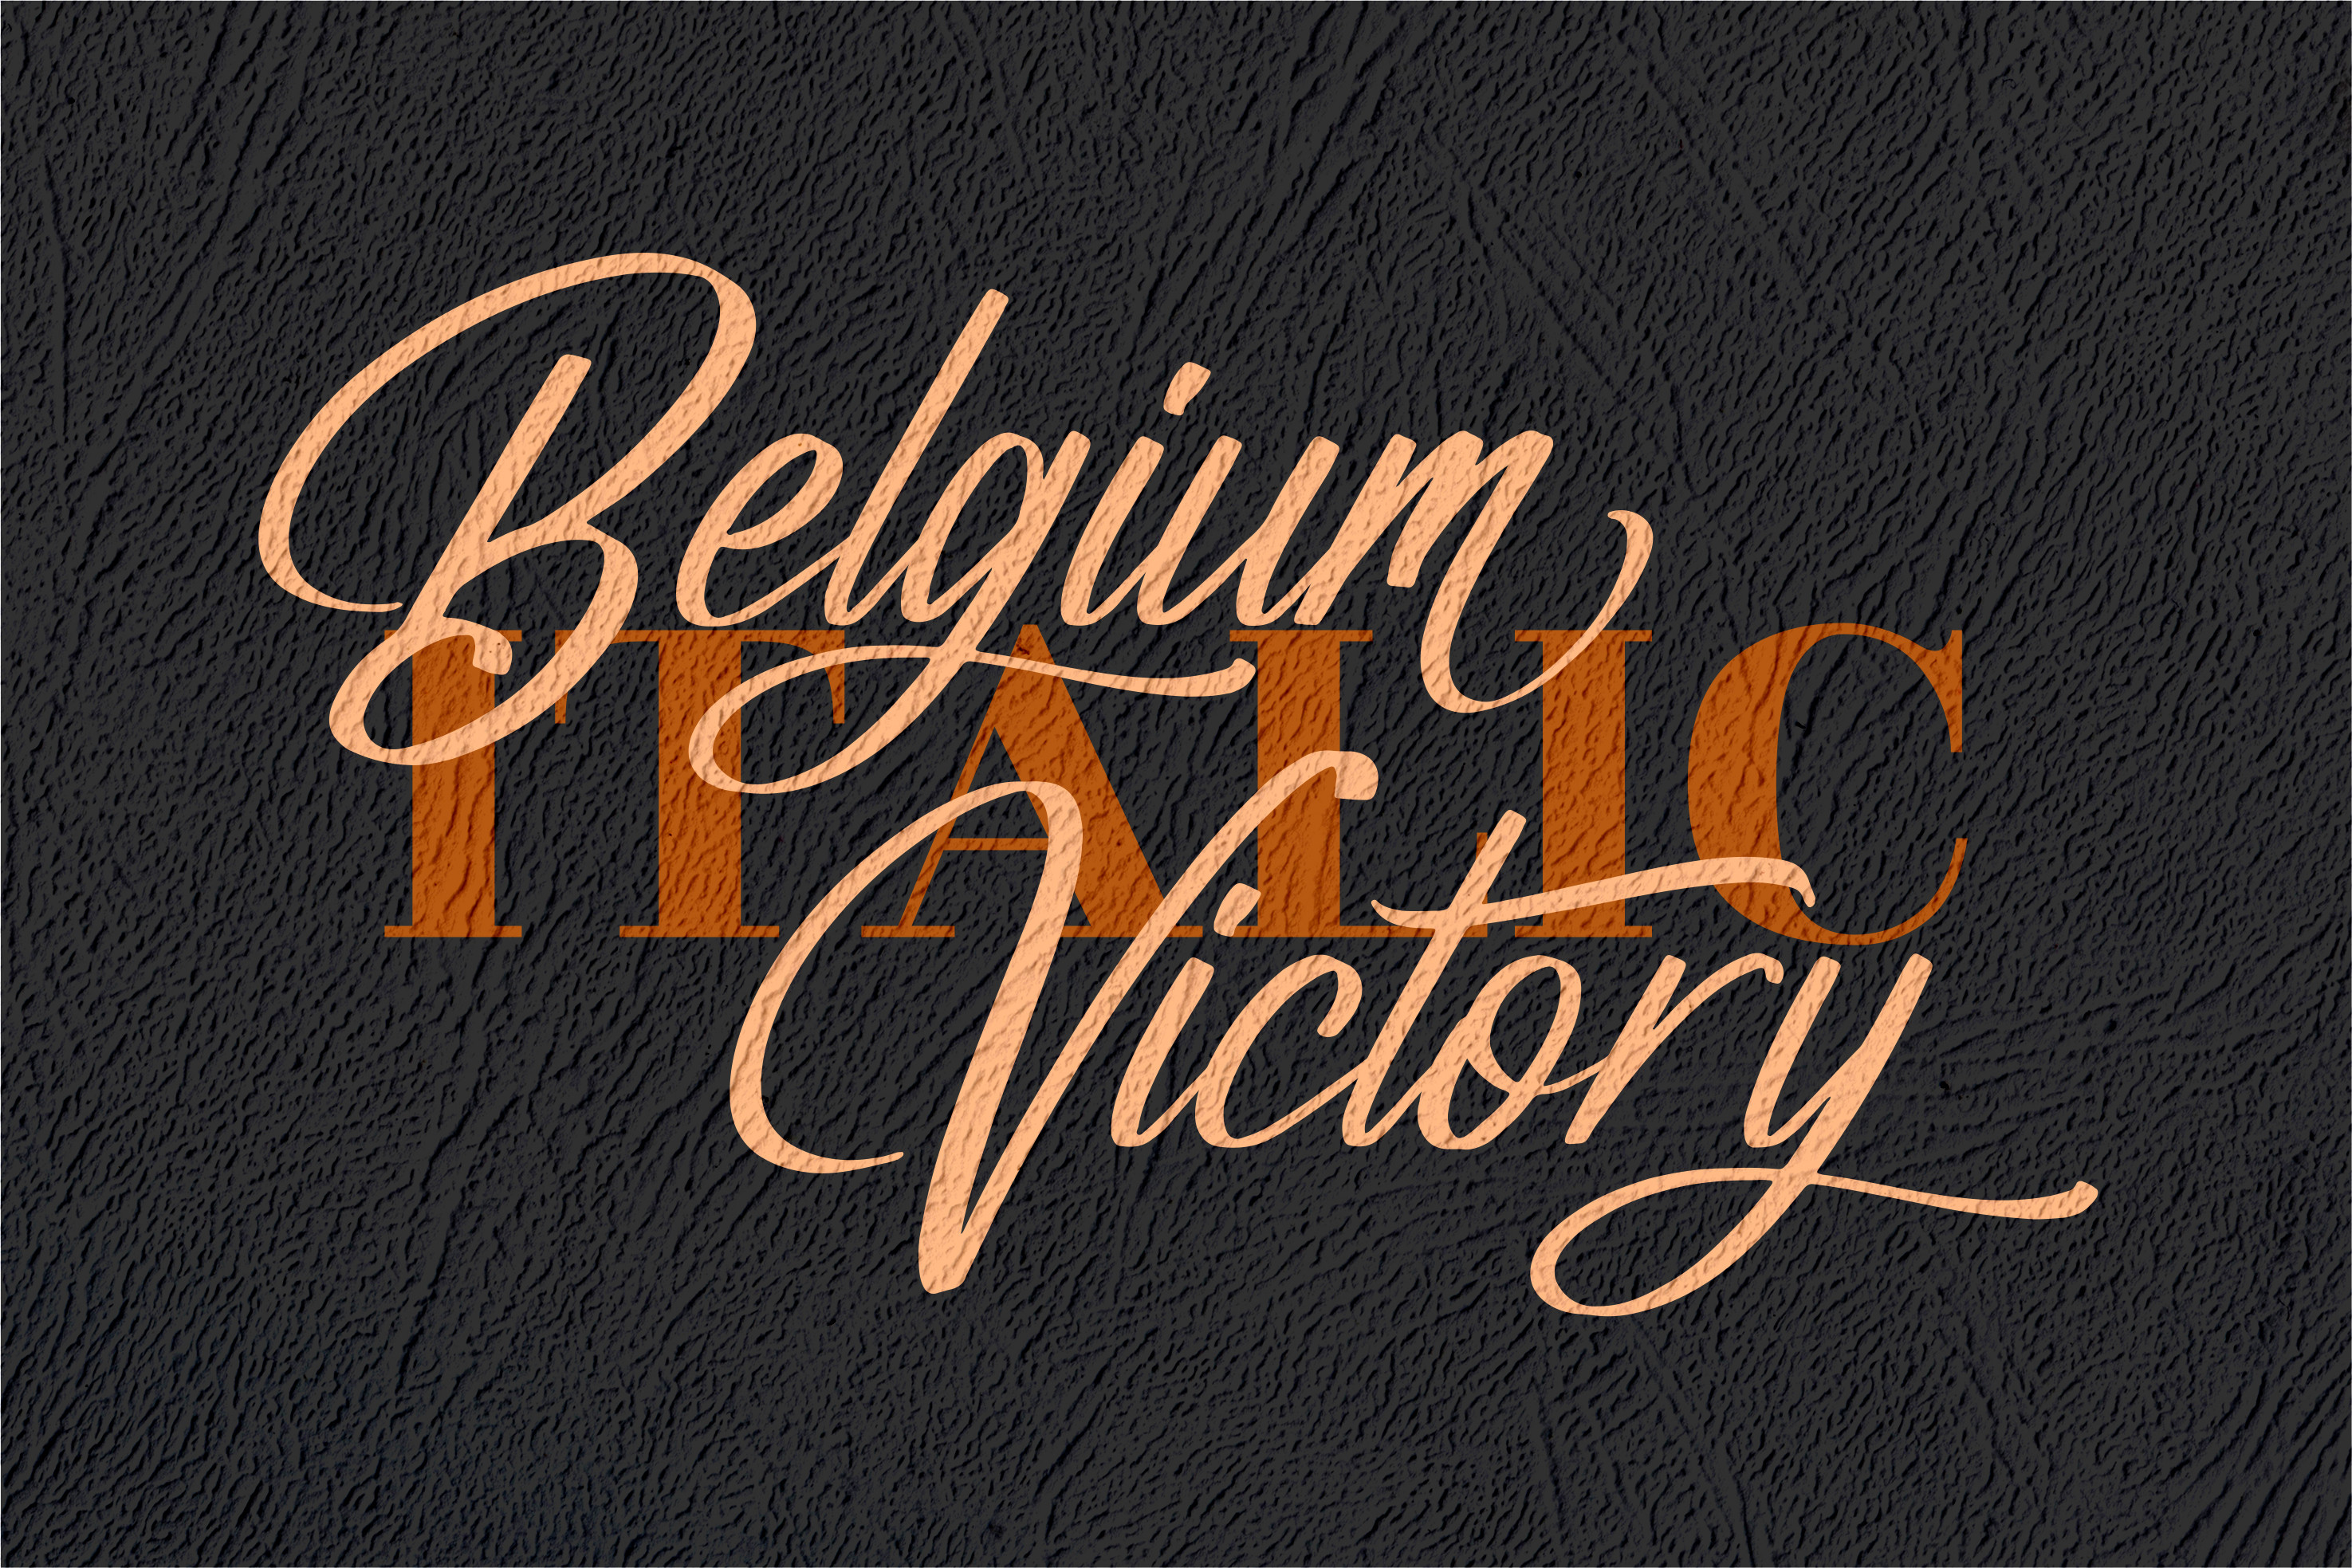 Belgium Victory